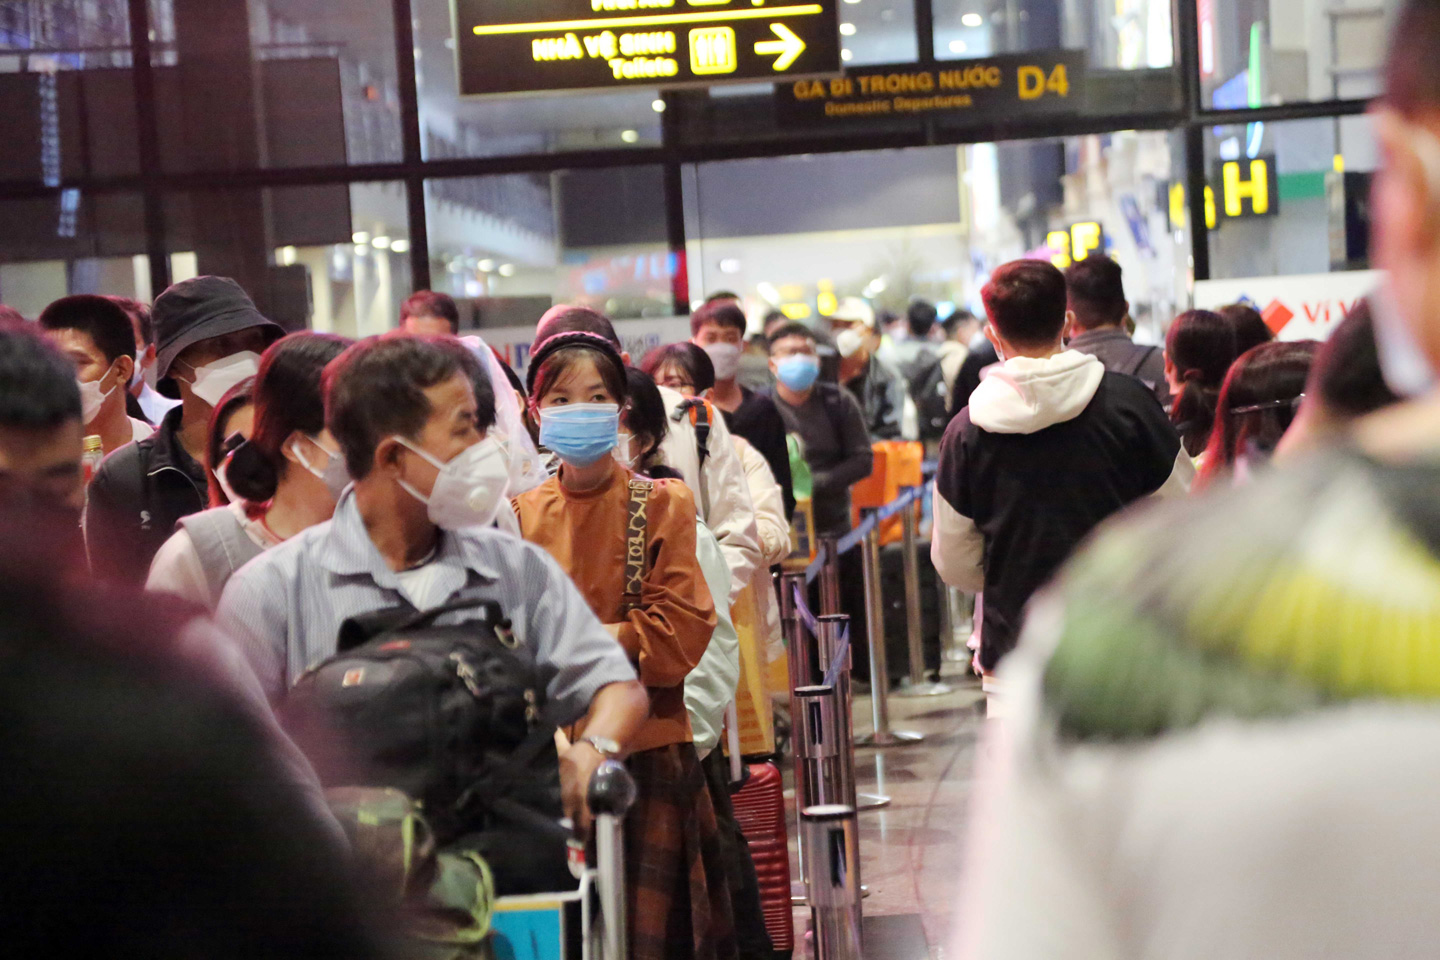 Ảnh: Sân bay Tân Sơn Nhất nghẹt người, khách nằm dài giữa nhà ga cả đêm chờ chuyến bay - 7